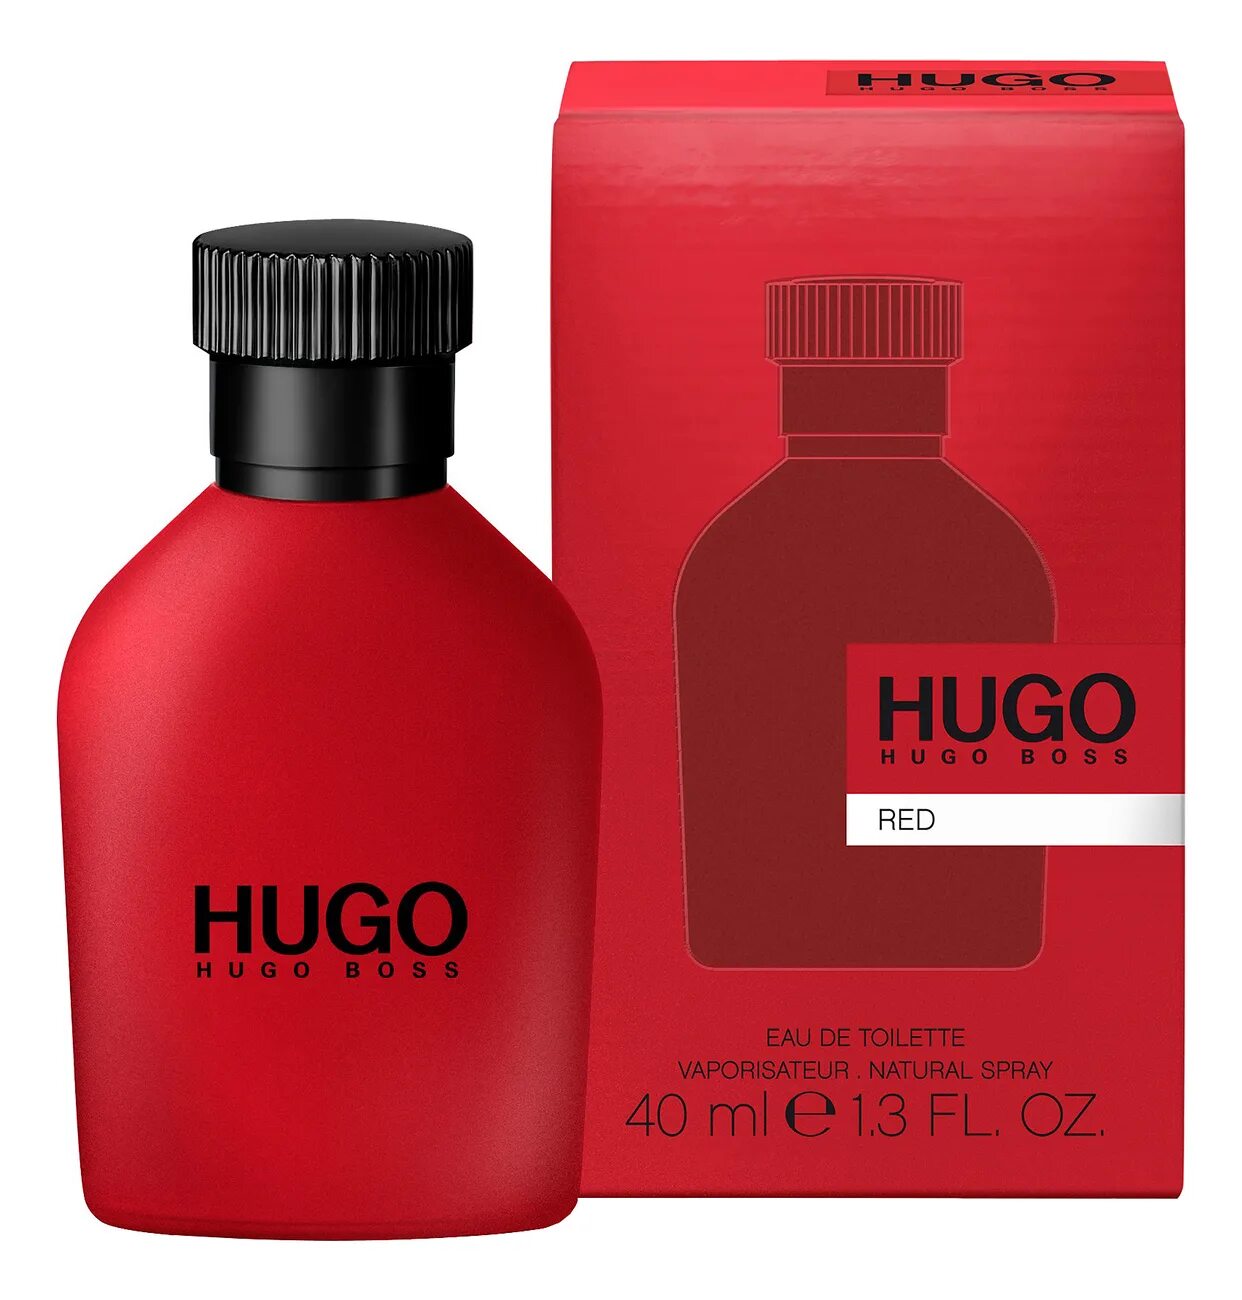 Hugo Boss "Hugo Red" EDT, 100ml. Hugo Boss Red, EDT., 150 ml. Hugo Boss Red EDT Хьюго босс ред туалетная вода 150 ml. Hugo Boss мужской Hugo туалетная вода (EDT) 40мл. Hugo на русском